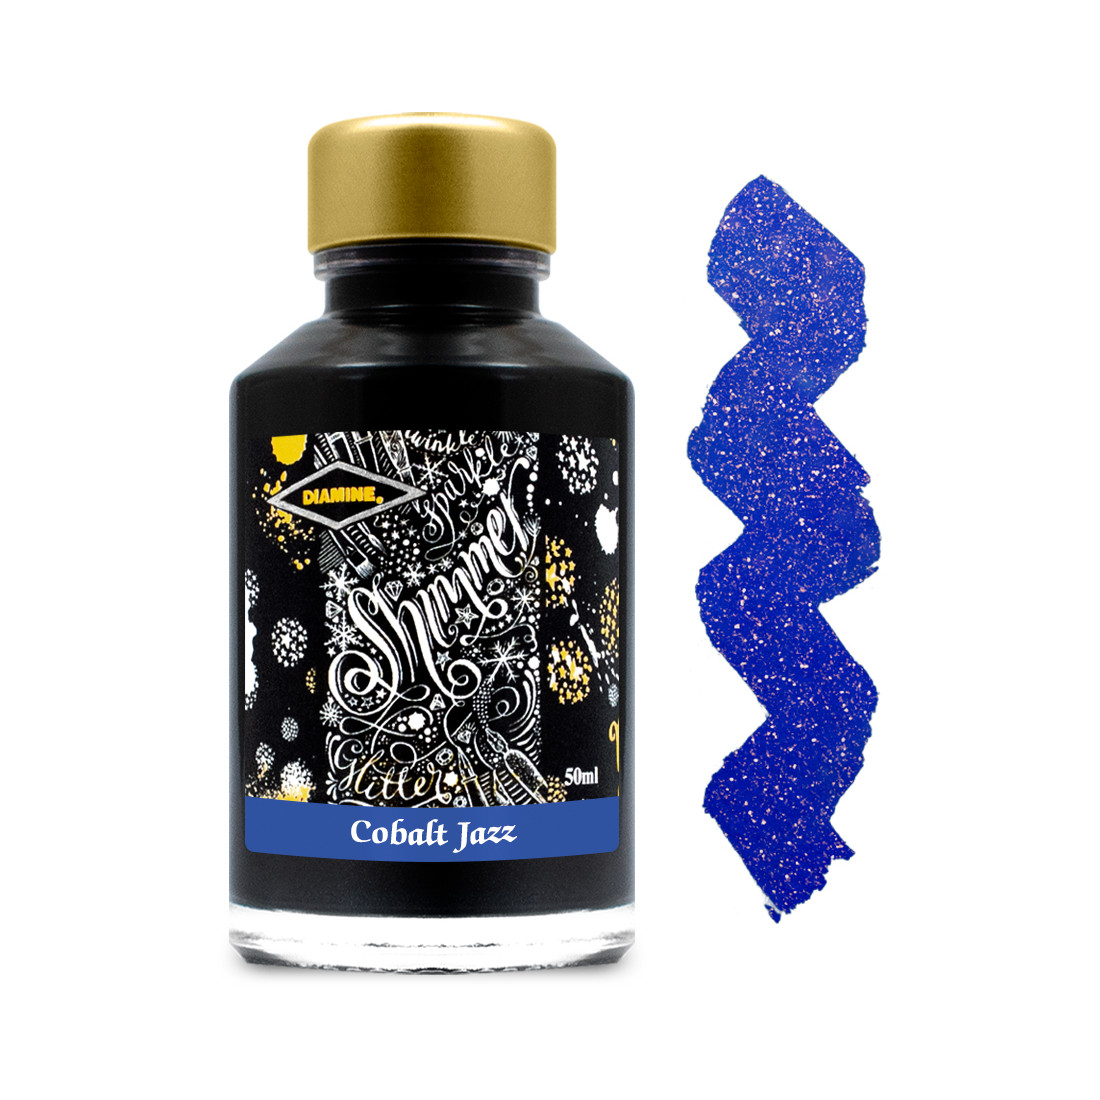 Diamine Ink Bottle 50ml - Cobalt Jazz